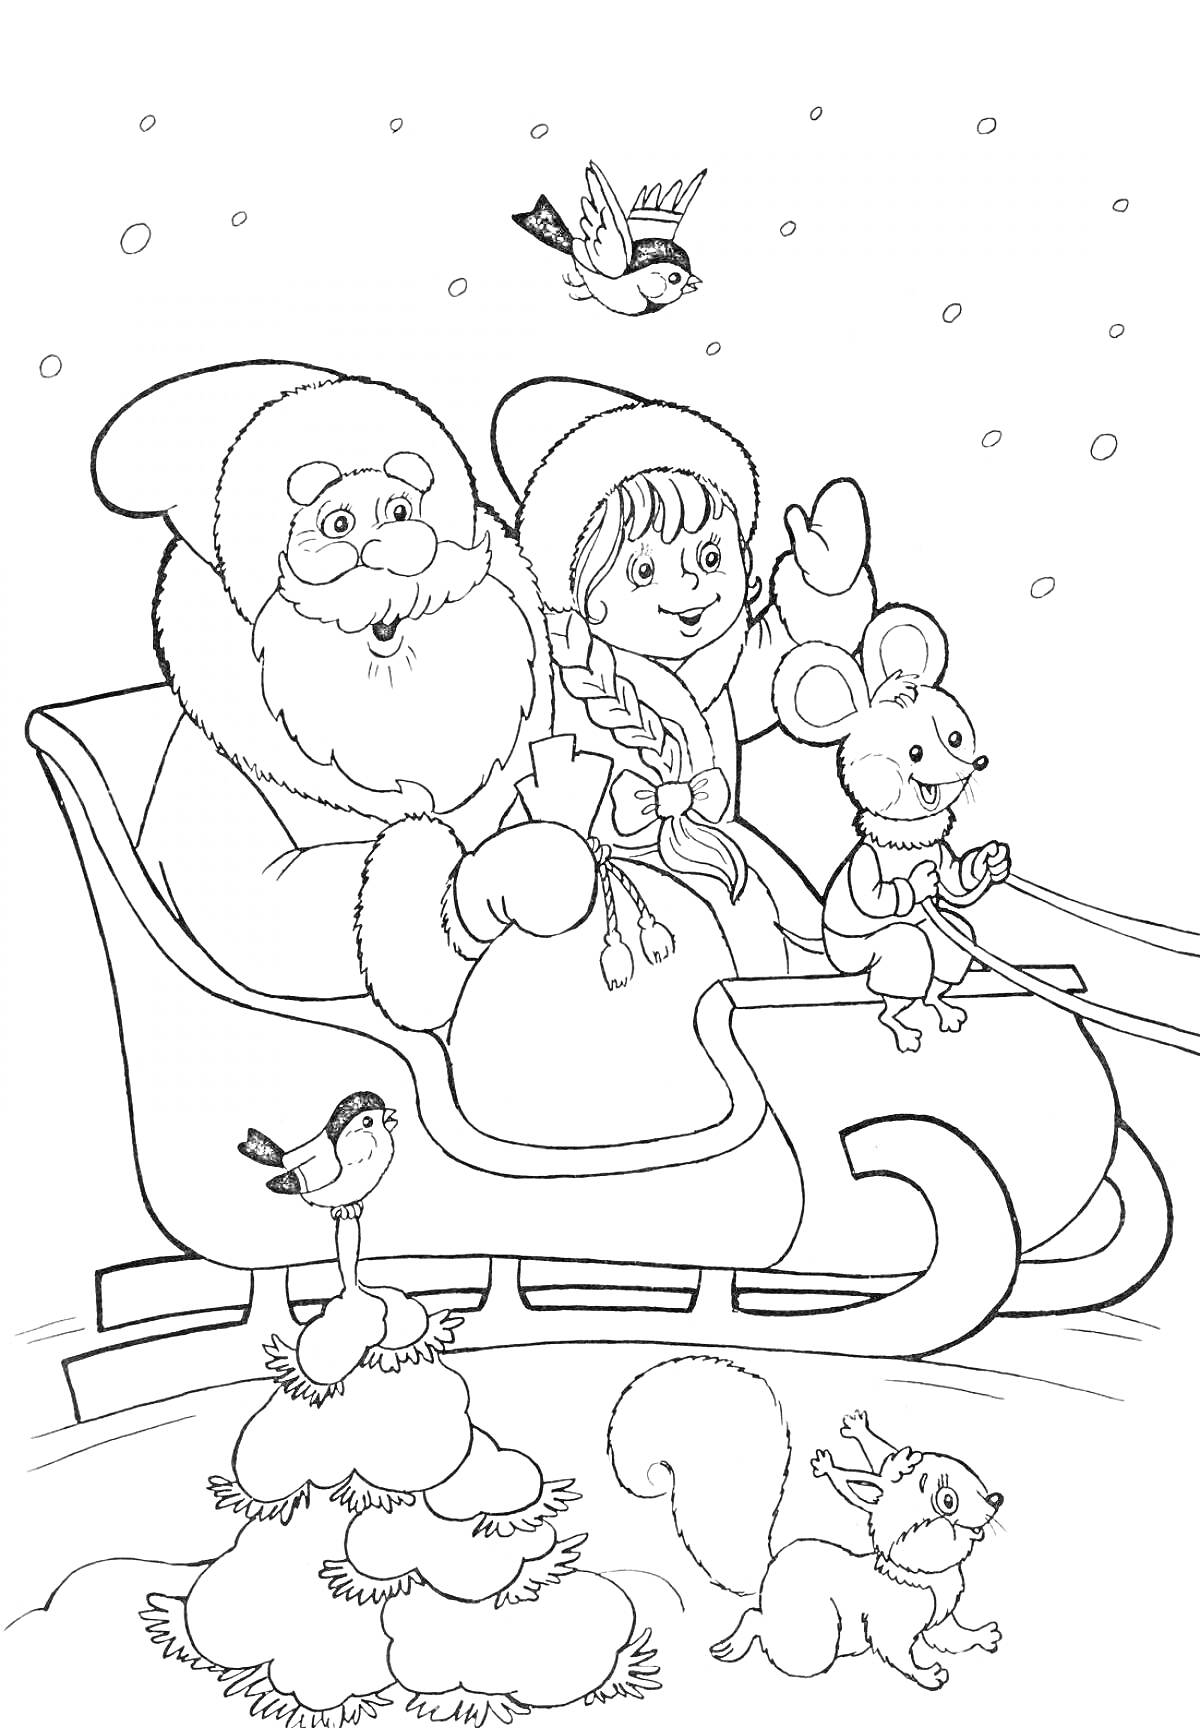 Раскраска Дед Мороз и Снегурочка в санях с мышкой, птицы, снег на елке, белка и снегирь